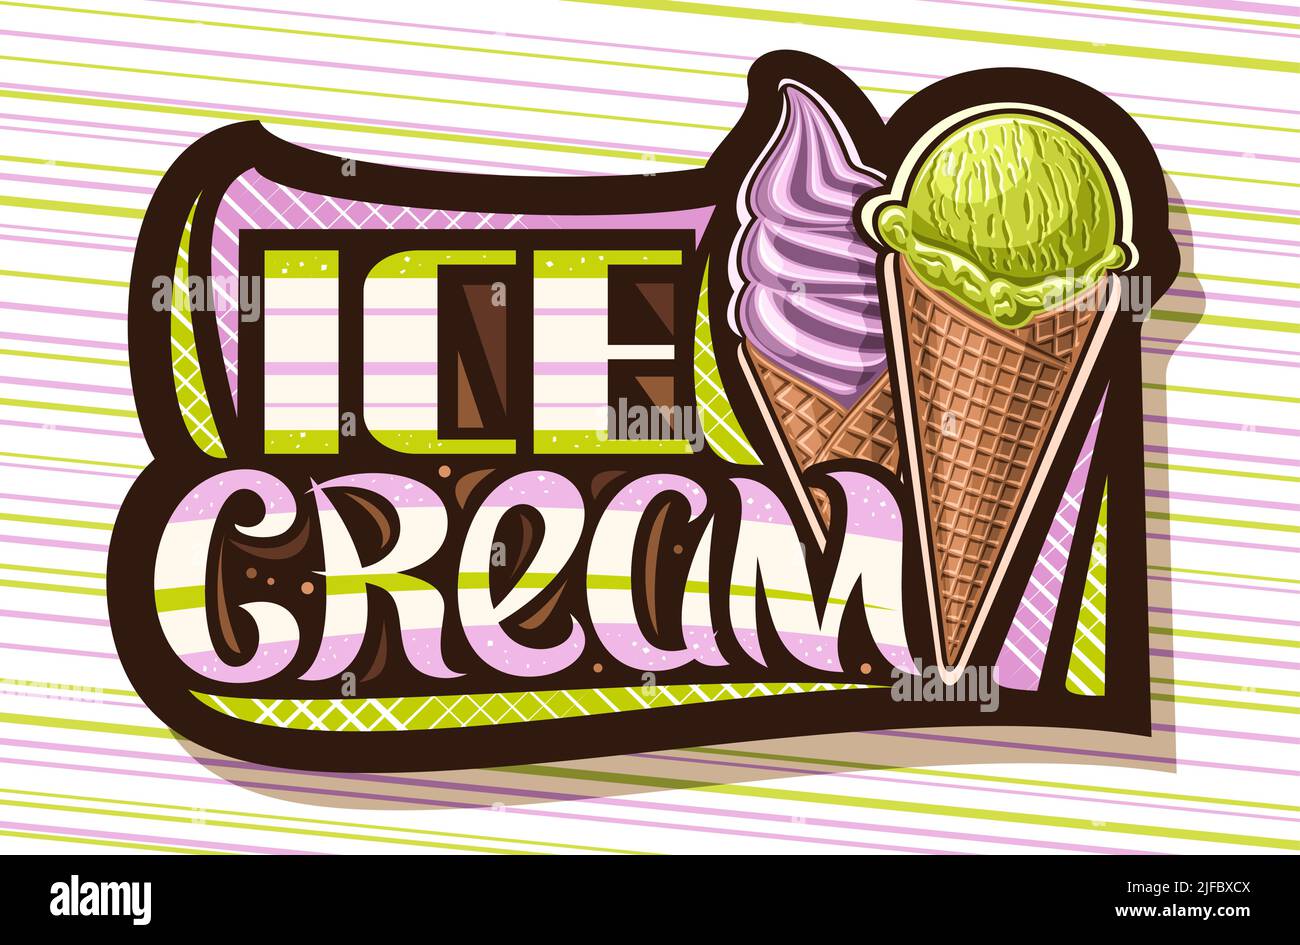 Logo Vector pour Ice Cream, étiquette noire avec illustration de deux différents icecreams dans des cornets de gaufres bruns, panneau de signalisation sombre pour les enfants café avec une laisse unique Illustration de Vecteur